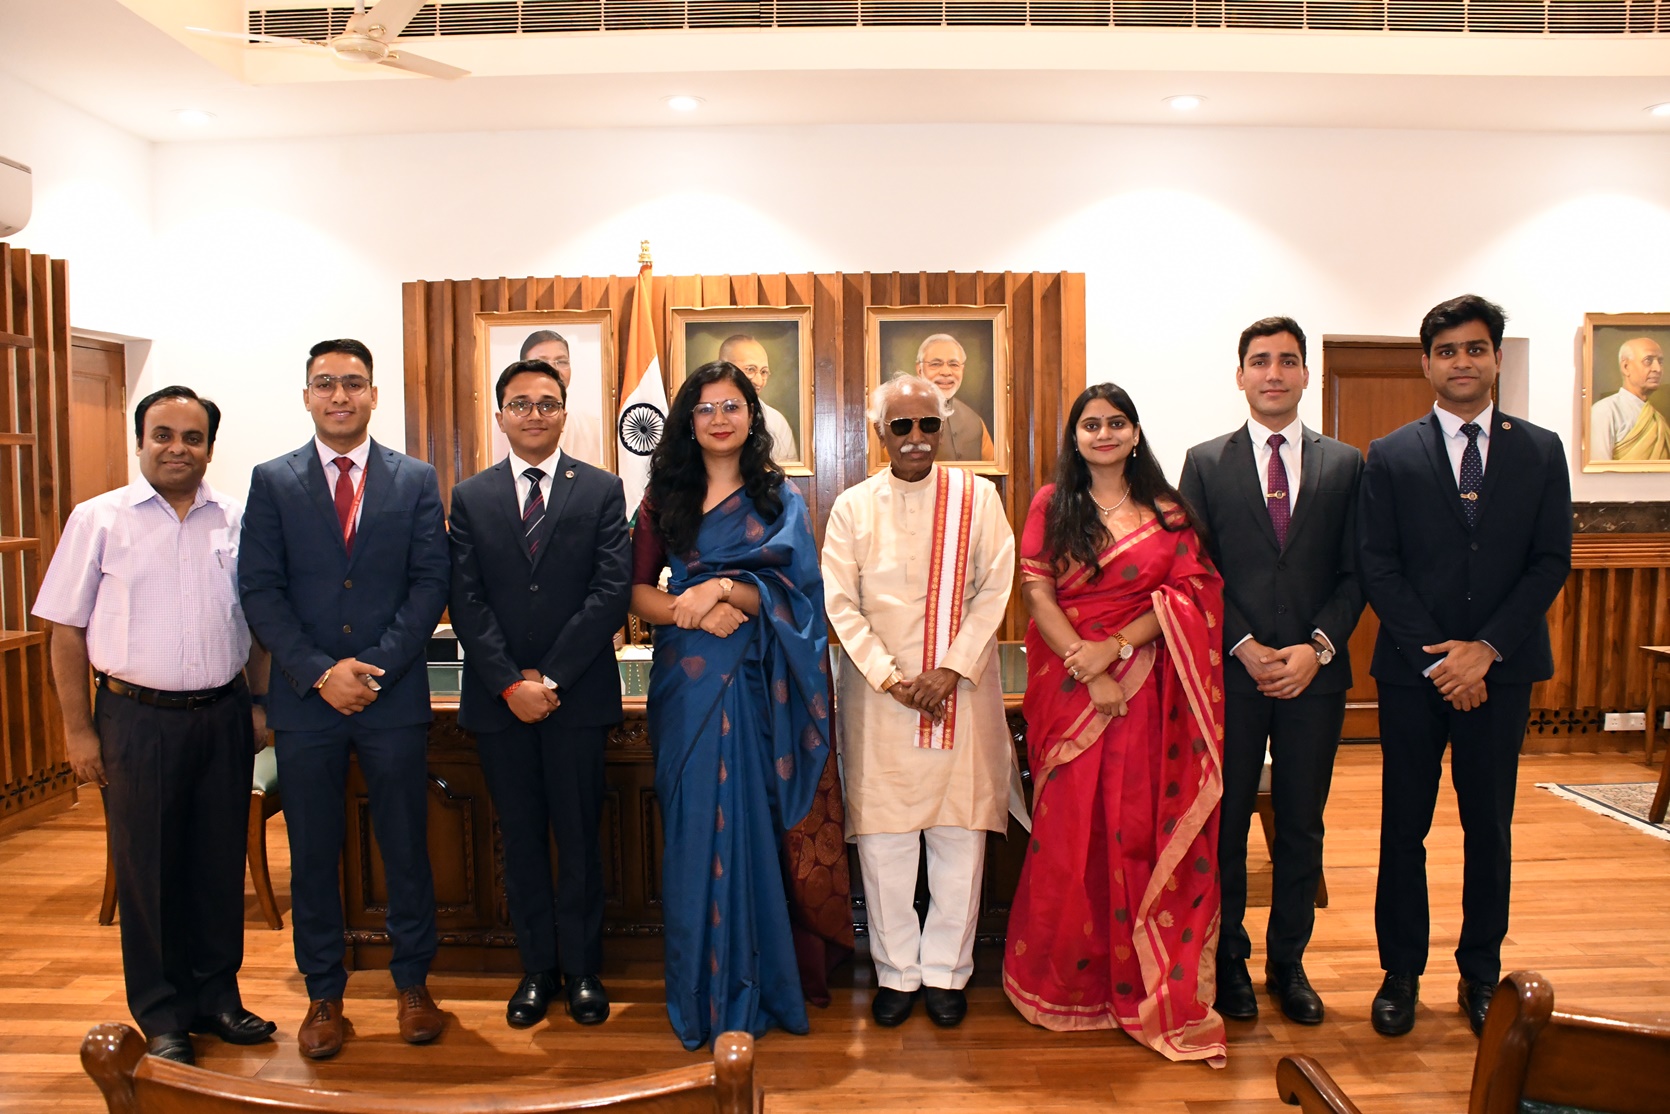 राज्यपाल श्री बंडारू दत्तात्रेय एवं  श्री अतुल द्विवेदी,सचिव राज्यपाल राजभवन में भारतीय प्रशासनिक सेवा के अधिकारियों के साथ समूह चित्र में